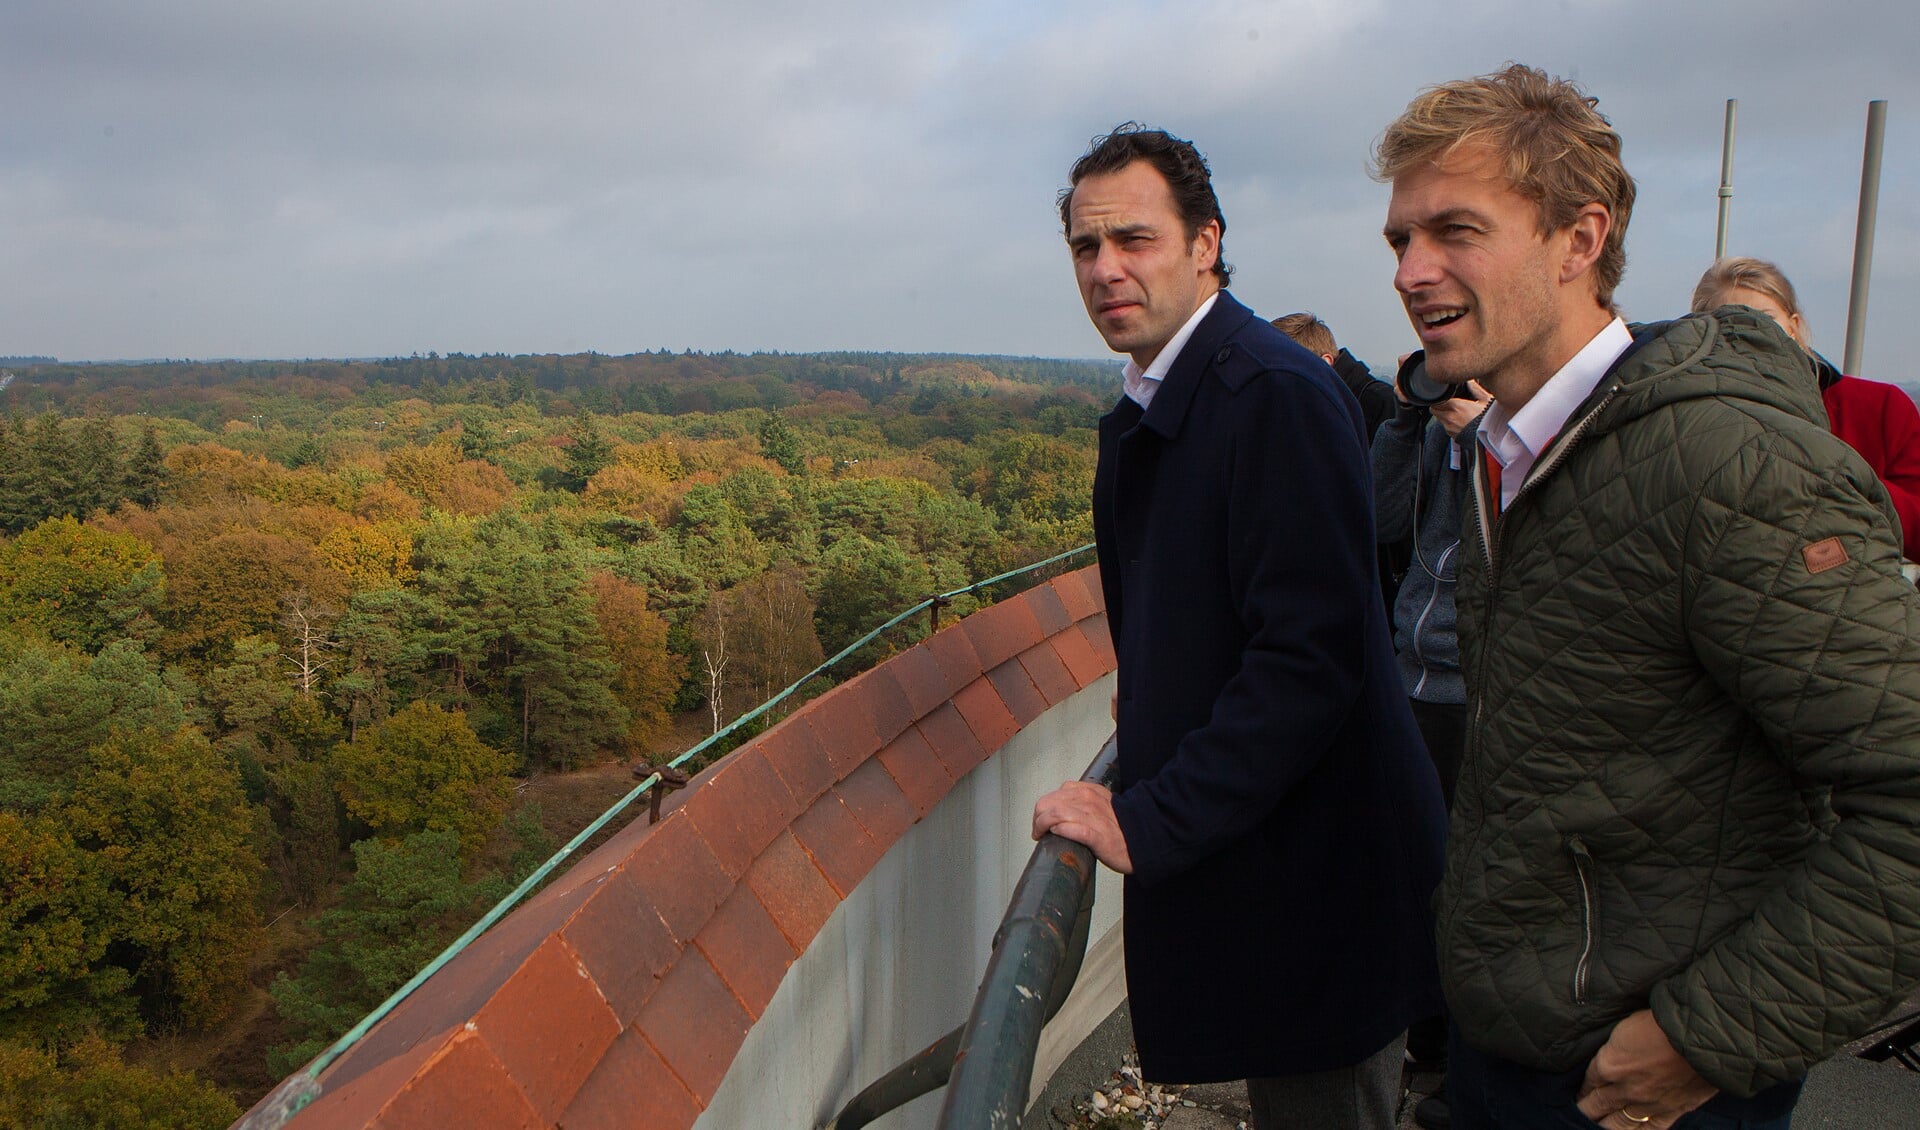 Staatssecretaris Martijn van Dam bekijkt samen met wethouder Tijmen Smit de heuvelrug vanaf de watertoren.